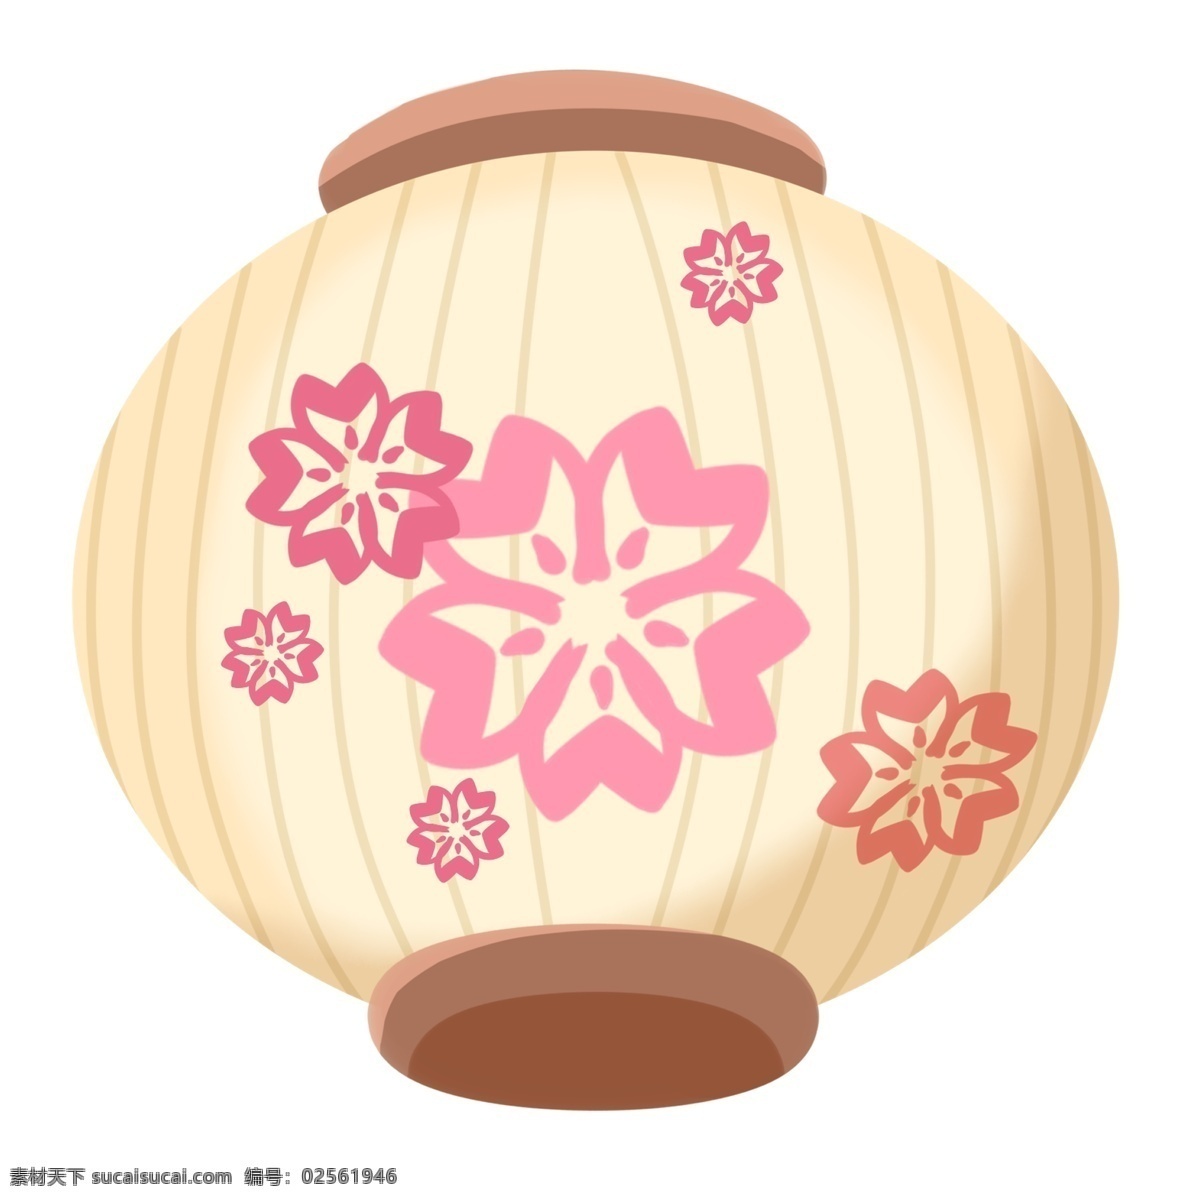 日本 花朵 灯笼 插画 大大的灯笼 卡通插画 日本插画 日本产物 日本风情 日本物品 日本的灯笼